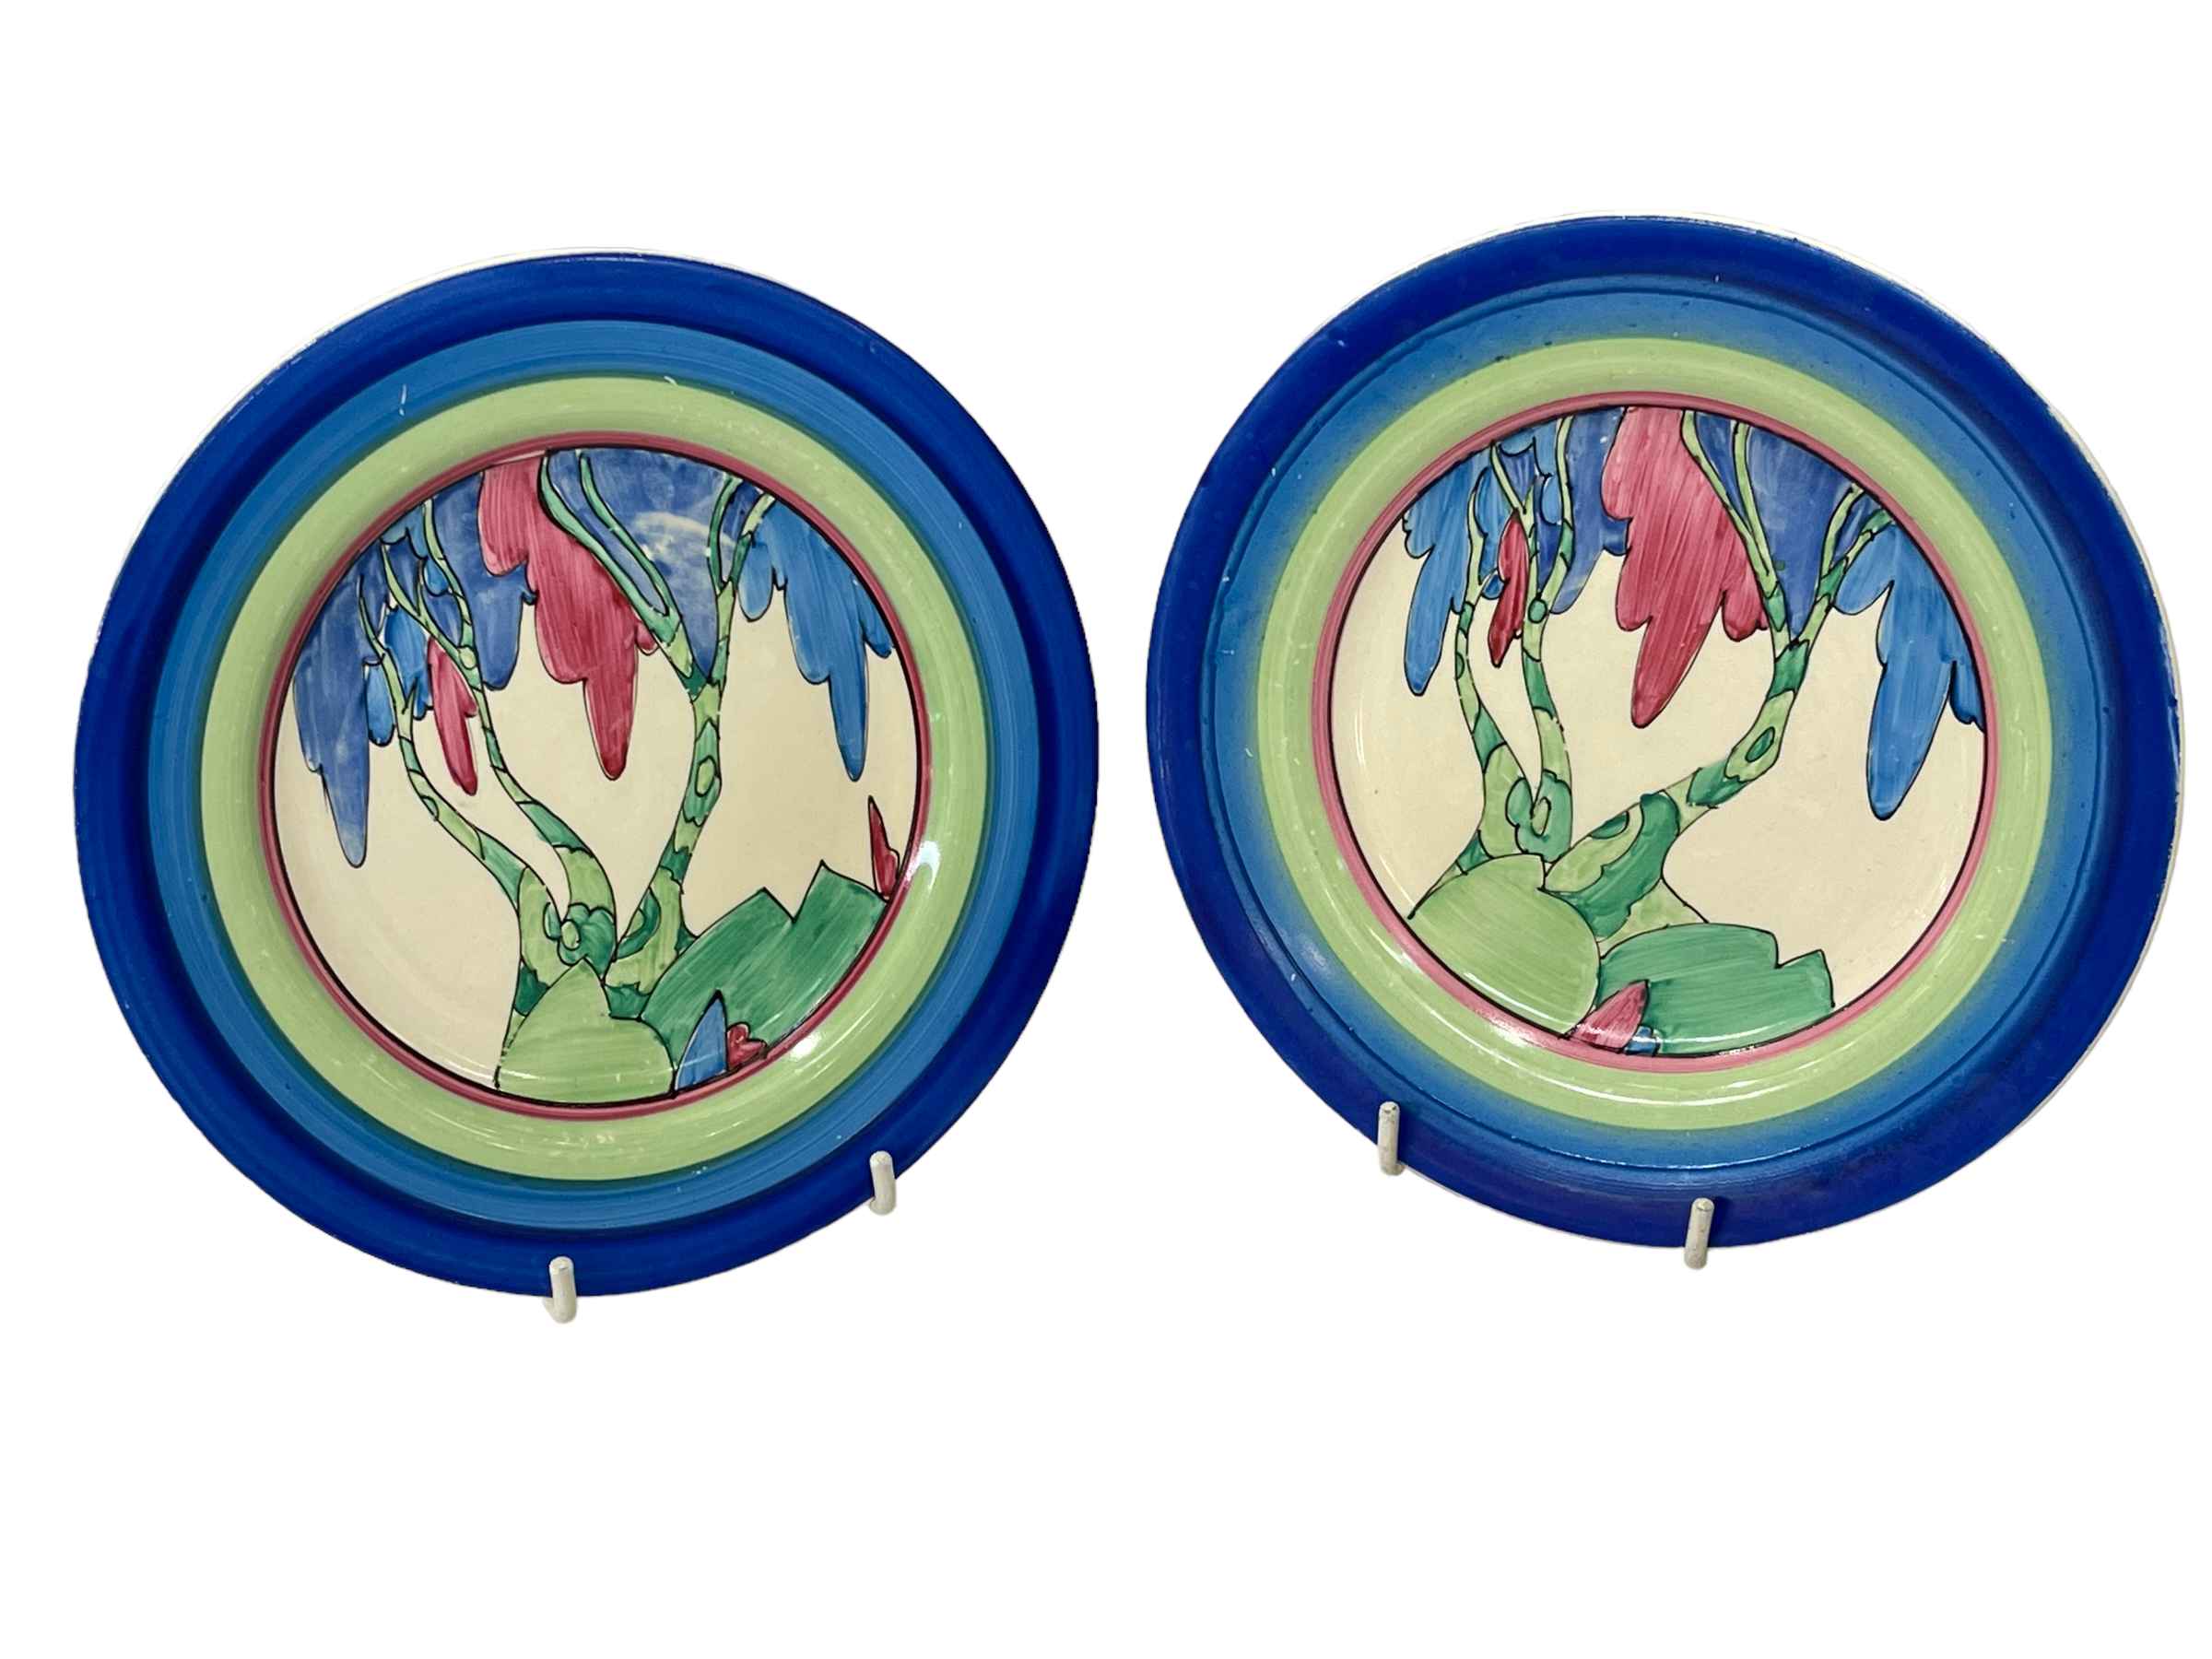 Pair Clarice Cliff Rudyard pattern tea plates, 17.5cm diameter.